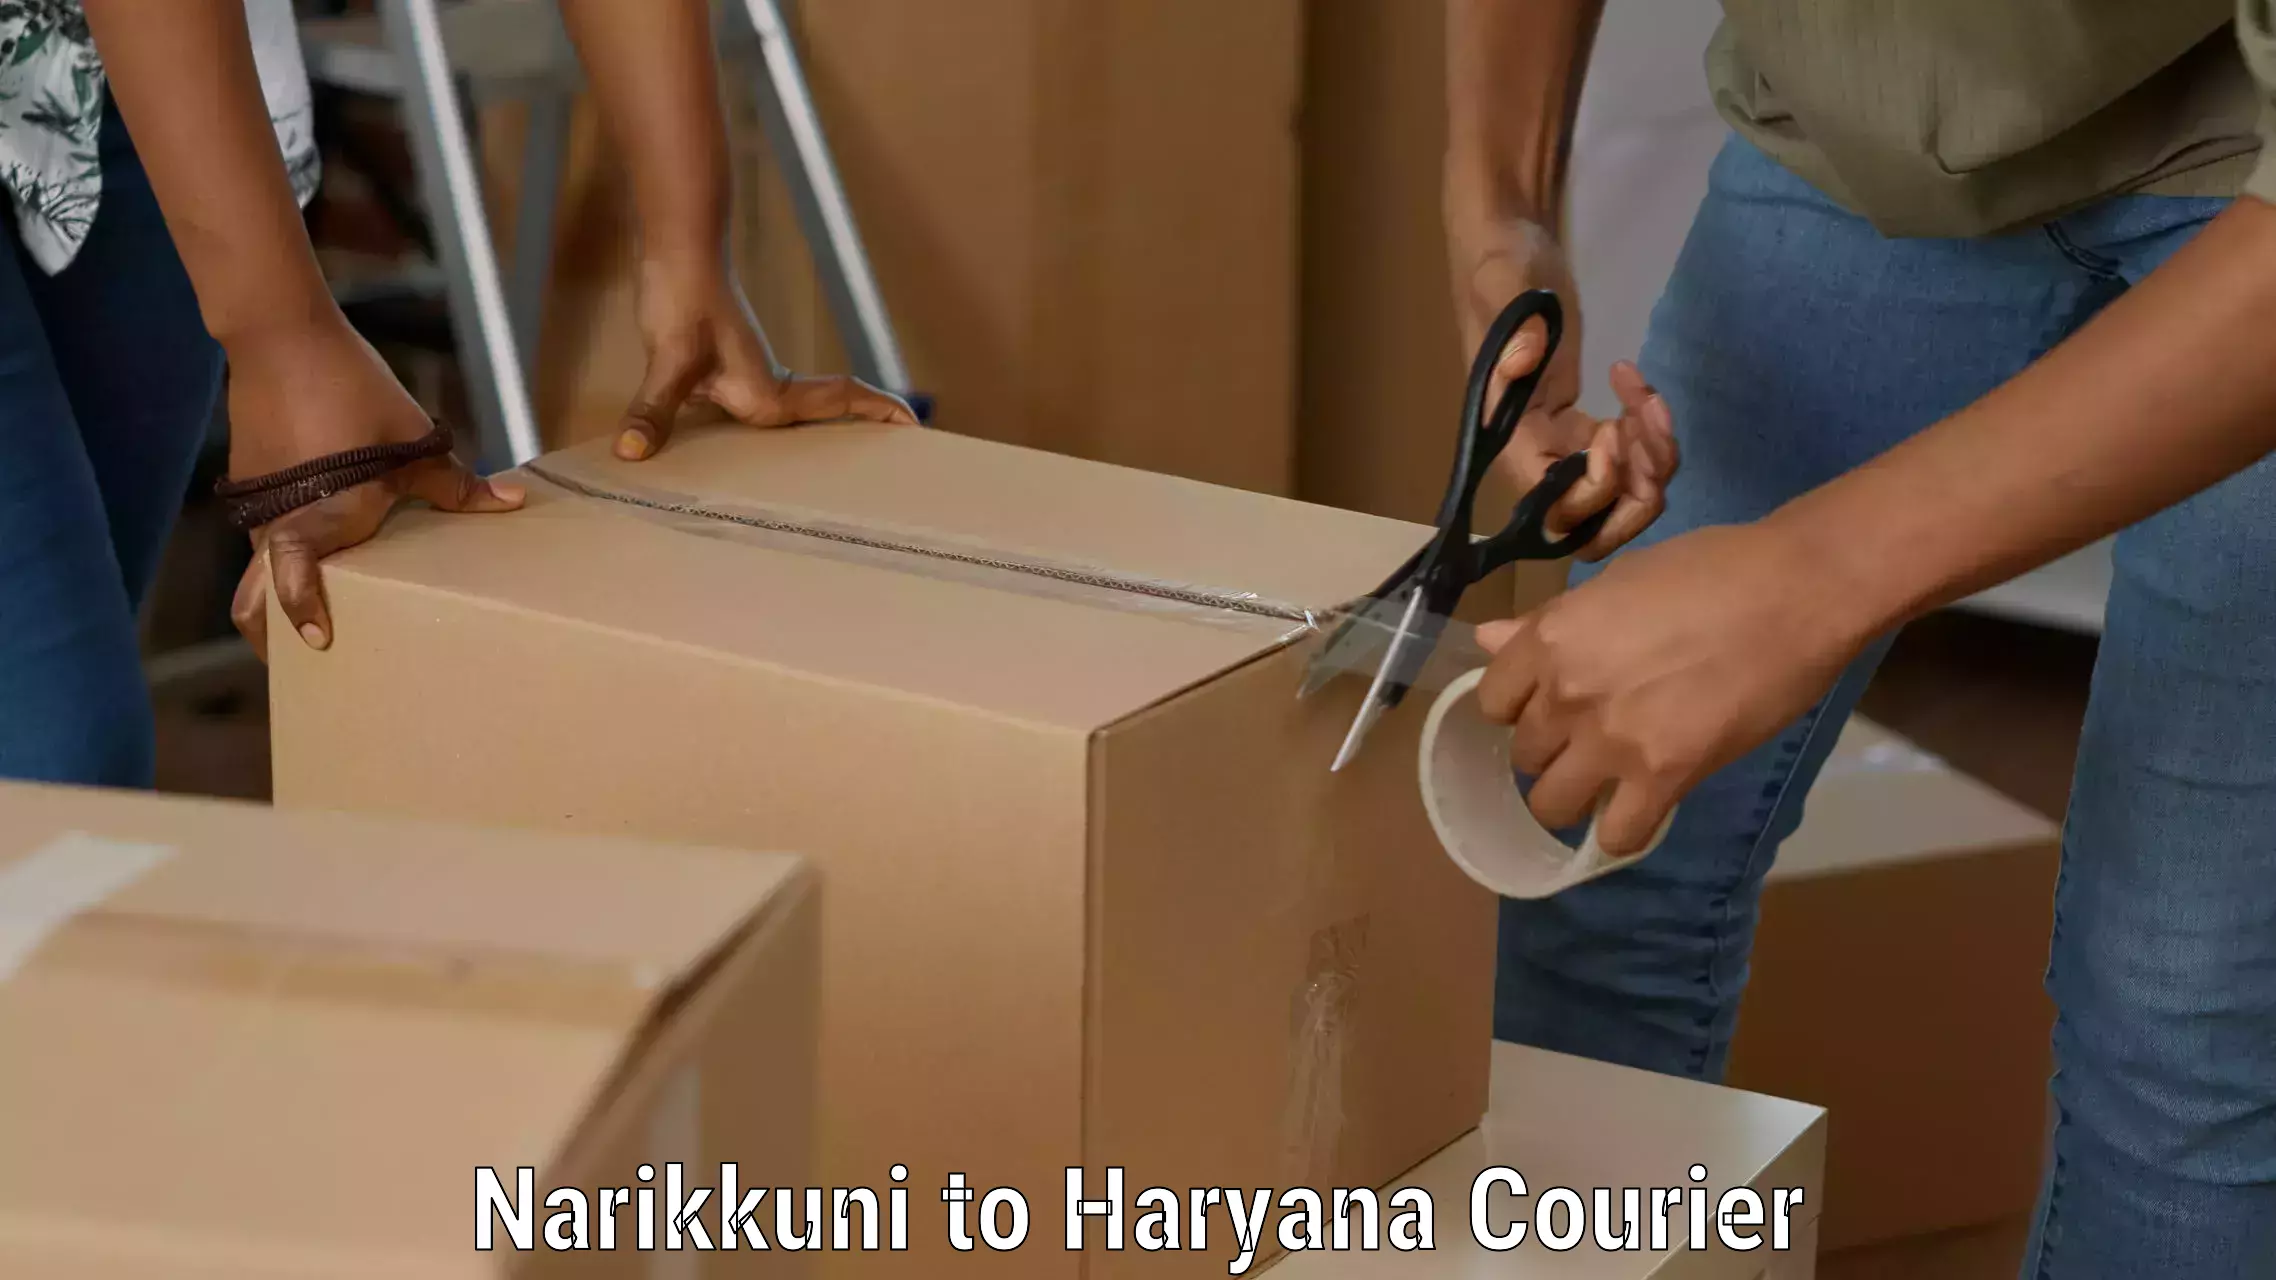 Expedited shipping methods Narikkuni to Haryana